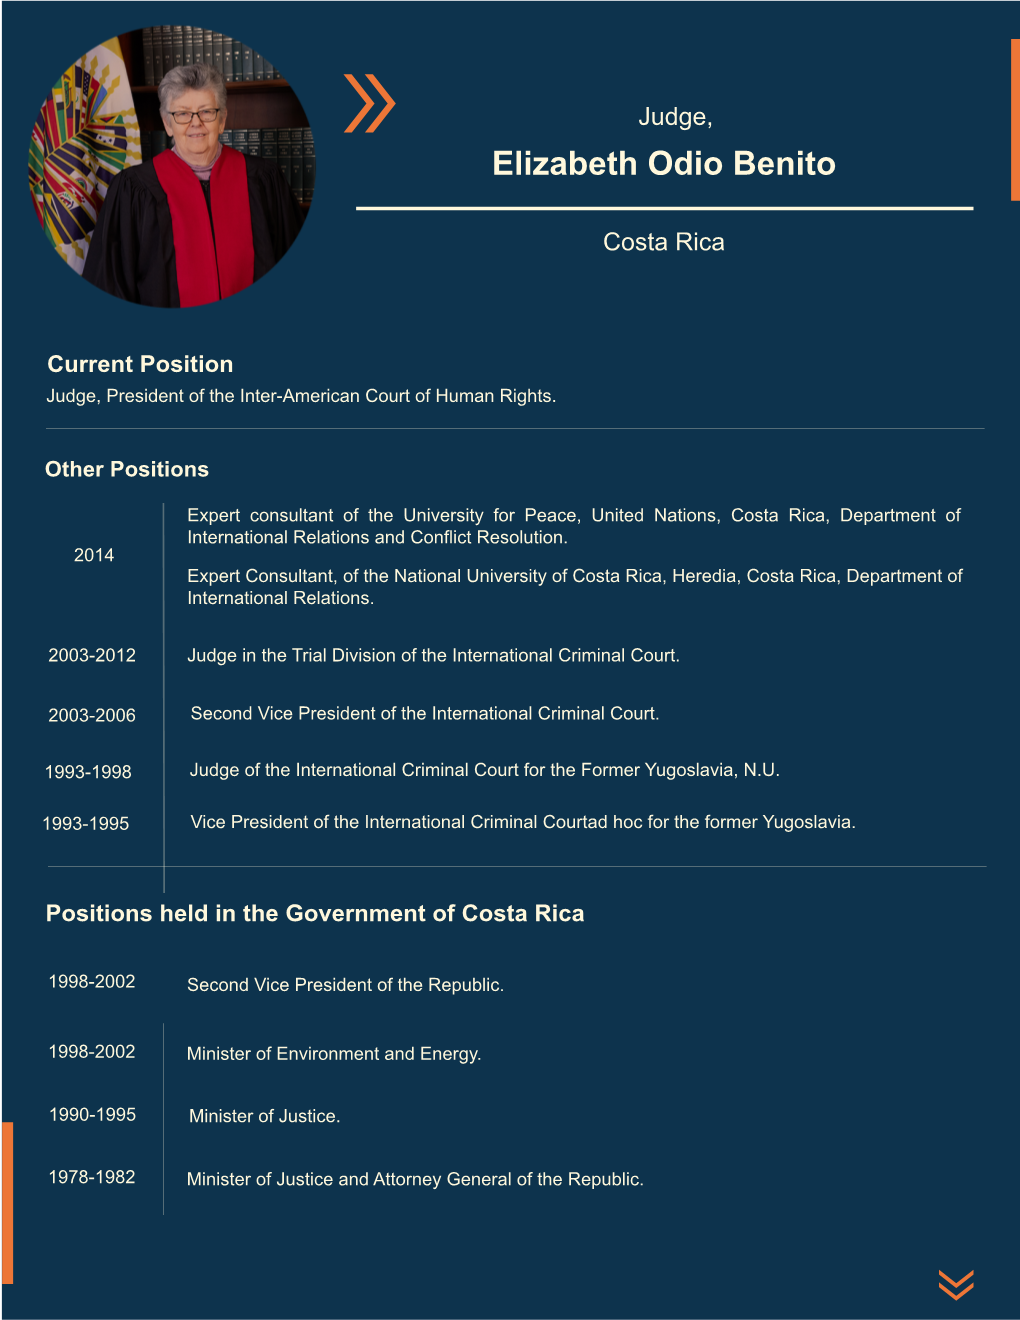 Elizabeth Odio Benito